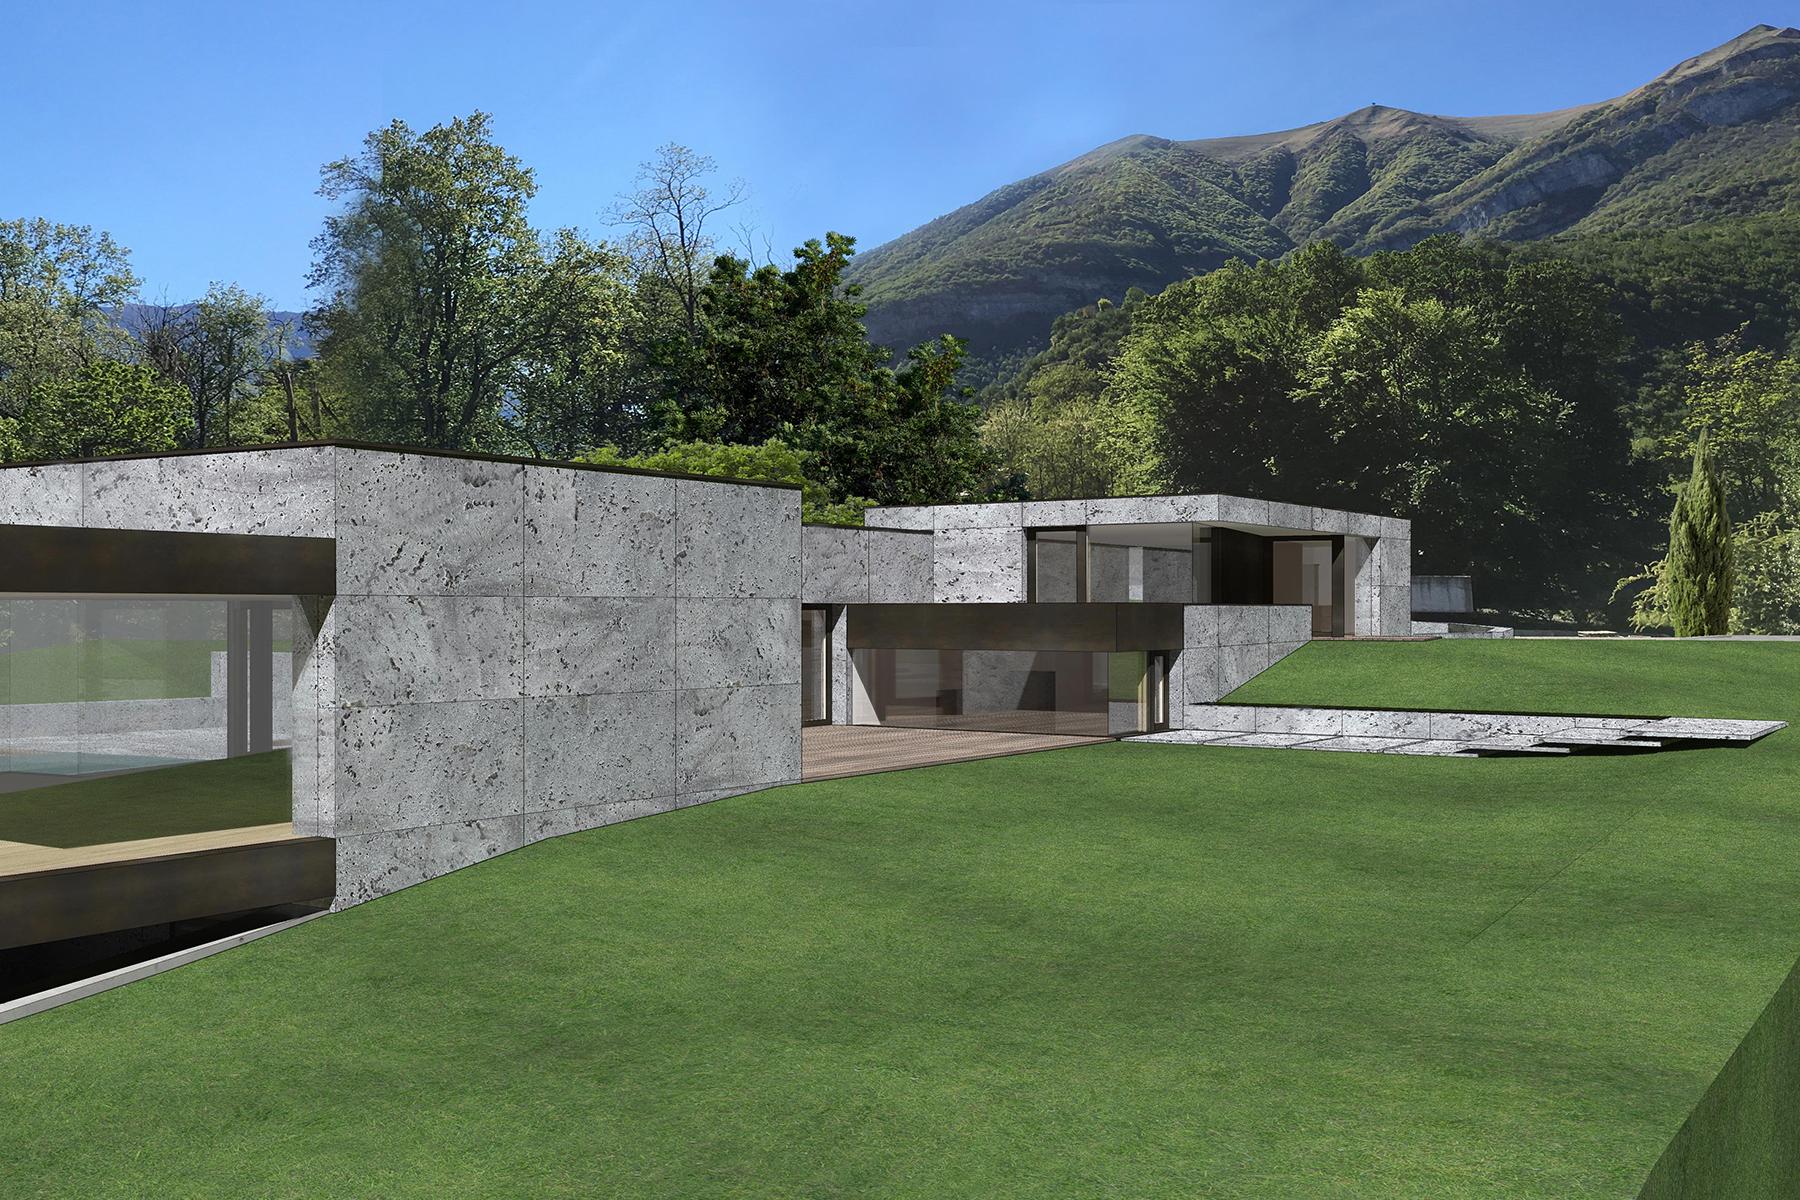 Villa in stile hollywoodiano con vista sul lago di Como da una posizione panoramica e dominante - 6